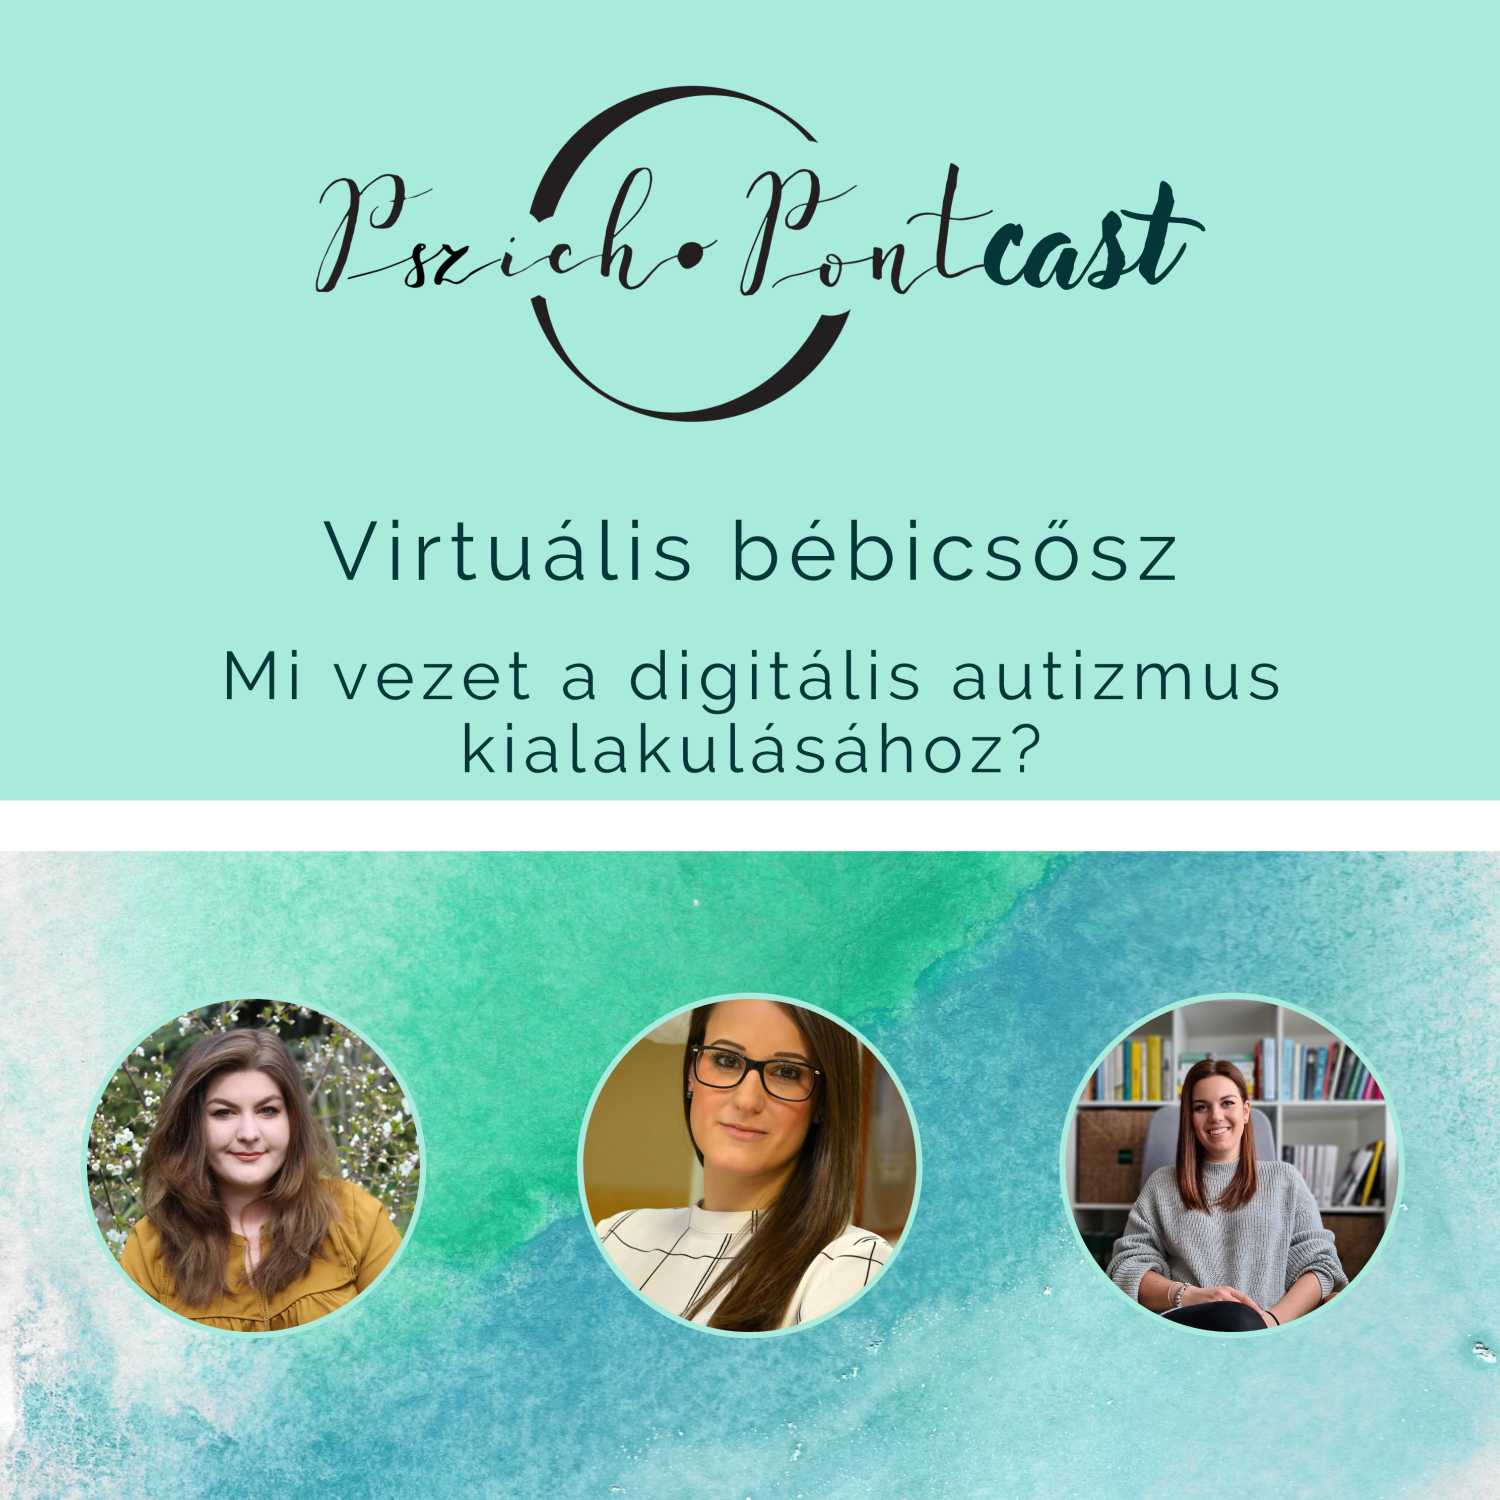 Virtuális bébicsősz - Mi vezet a digitális autizmuhoz